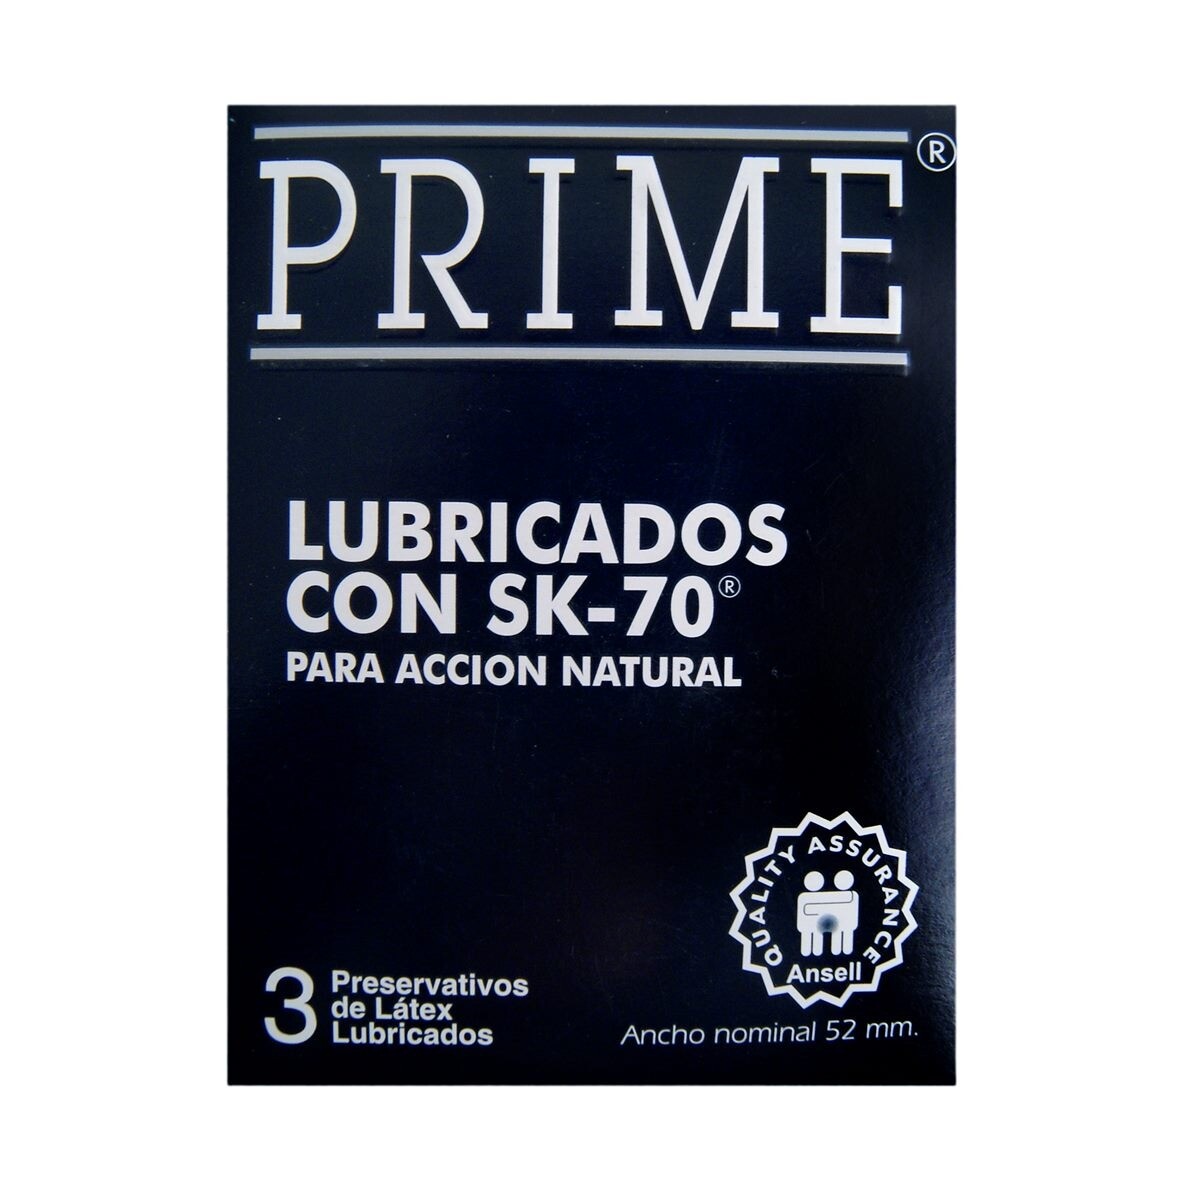 Preservativo Prime Lubricado Sk 70 3 Uds. 